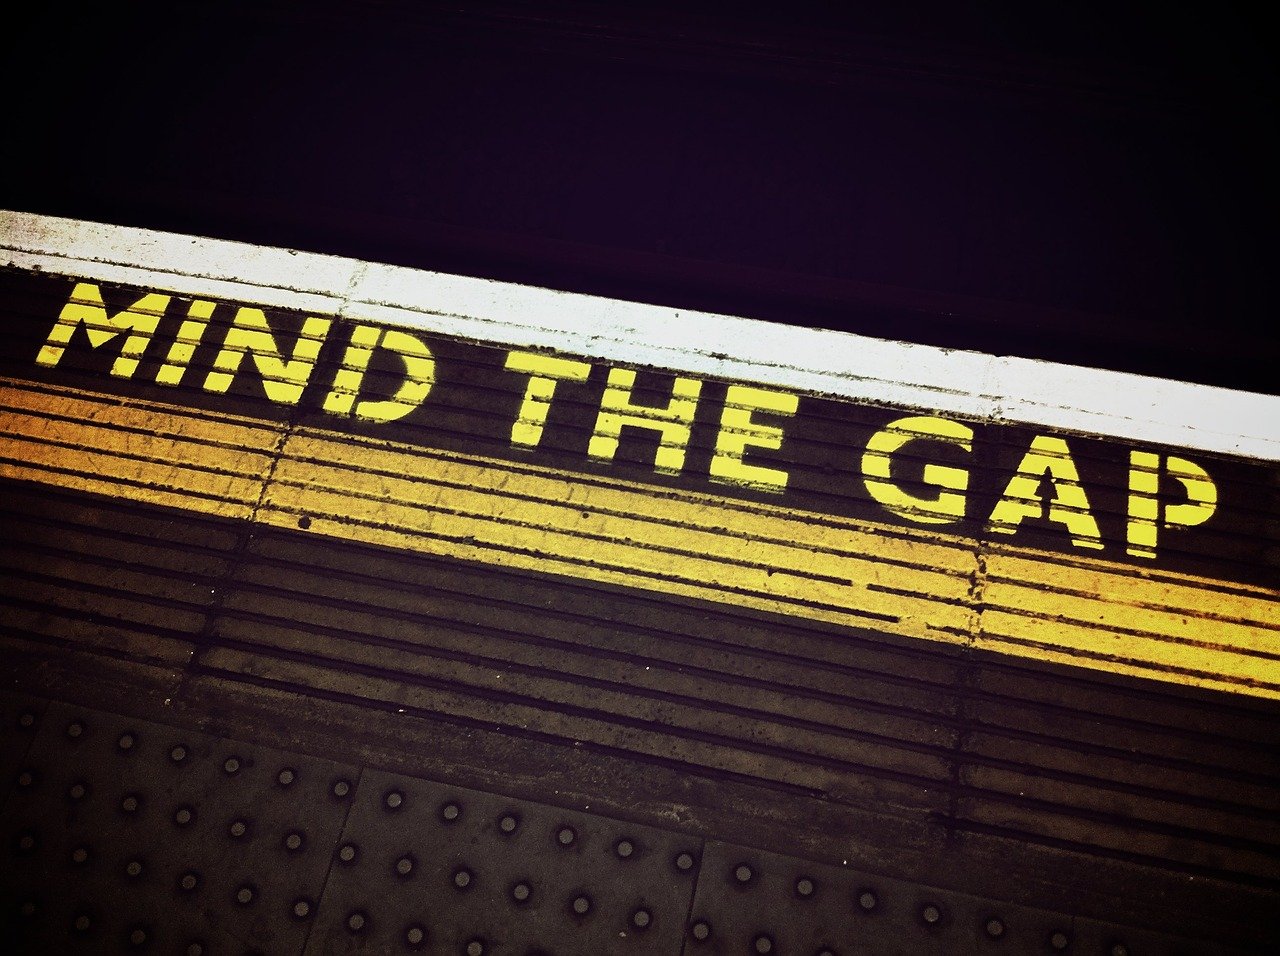 mind the gap, london, underground